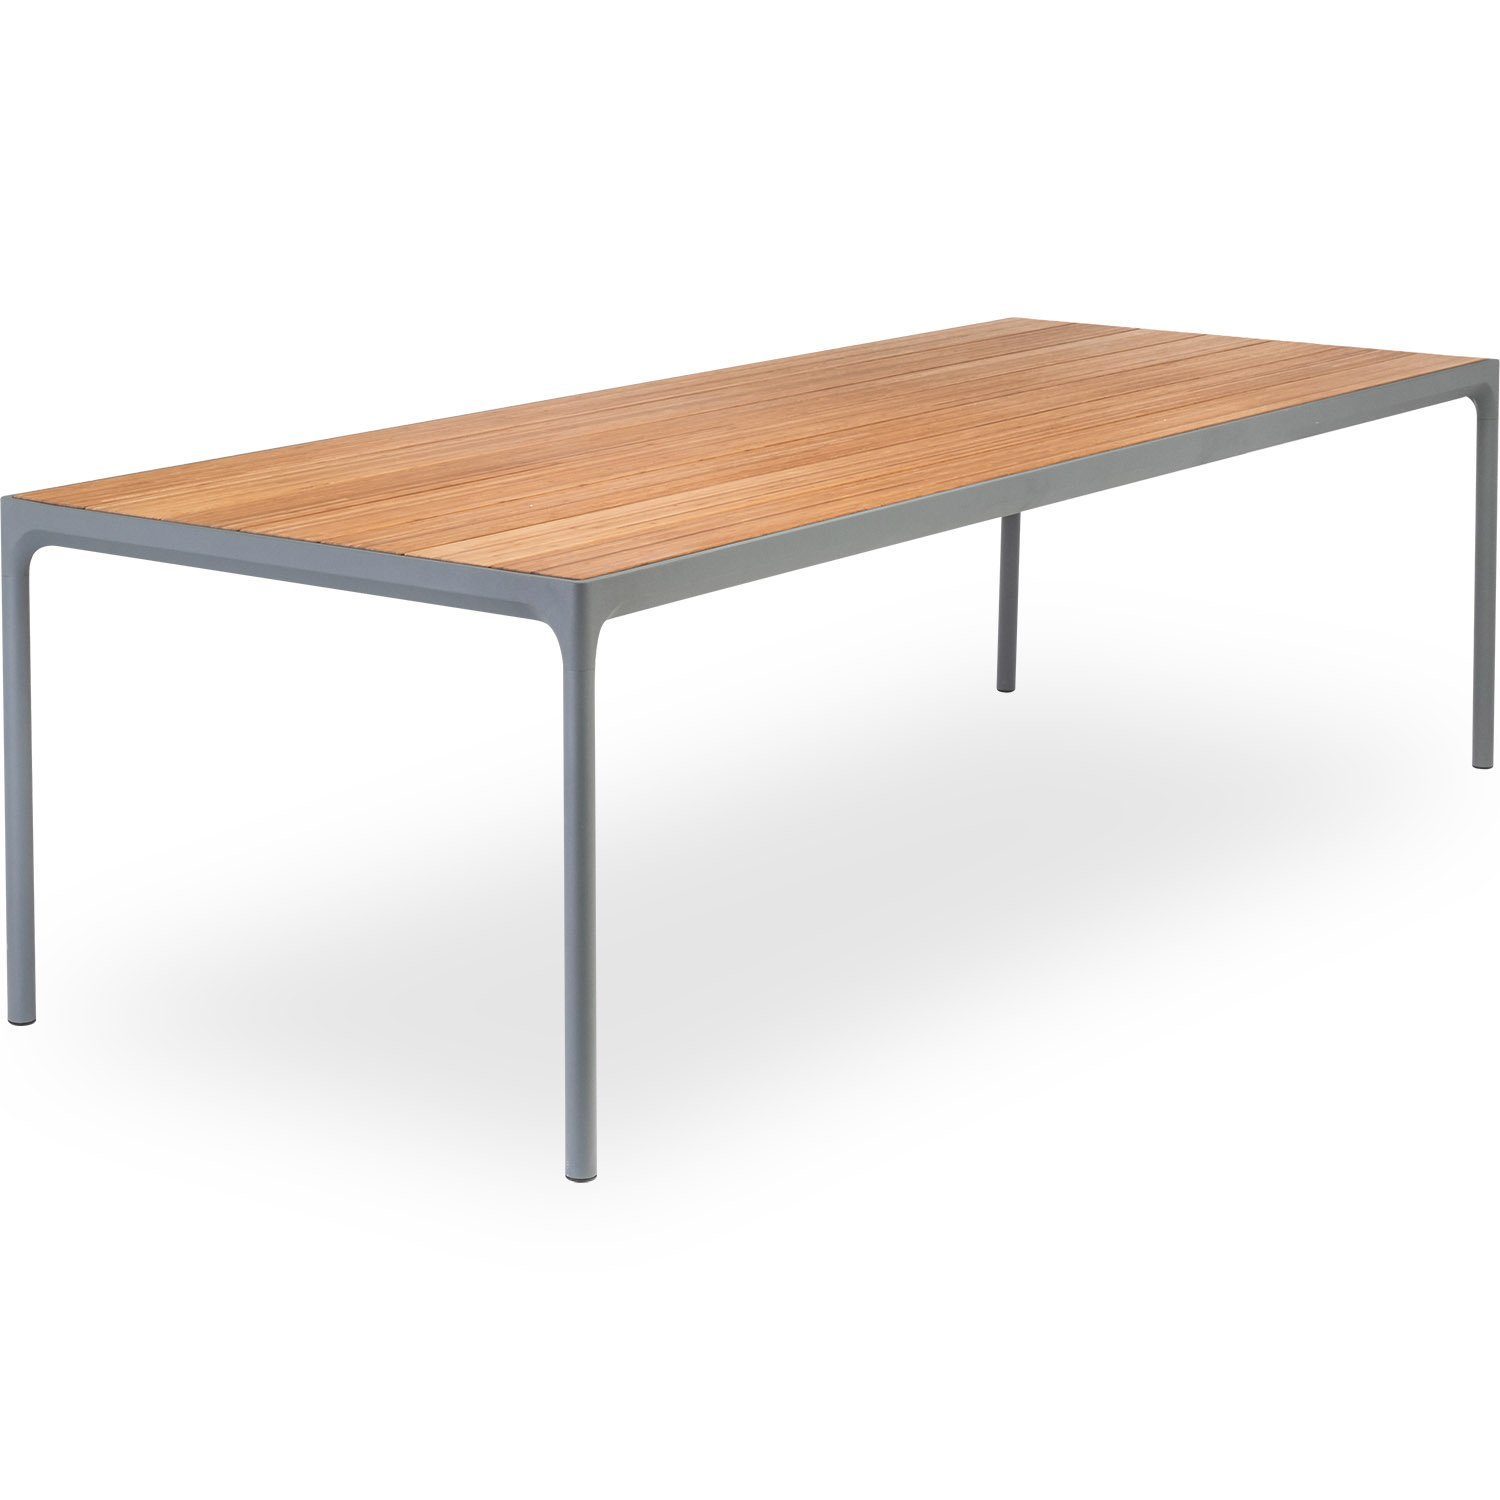 Four matbord i bambu och lackat stål från danska Houe.